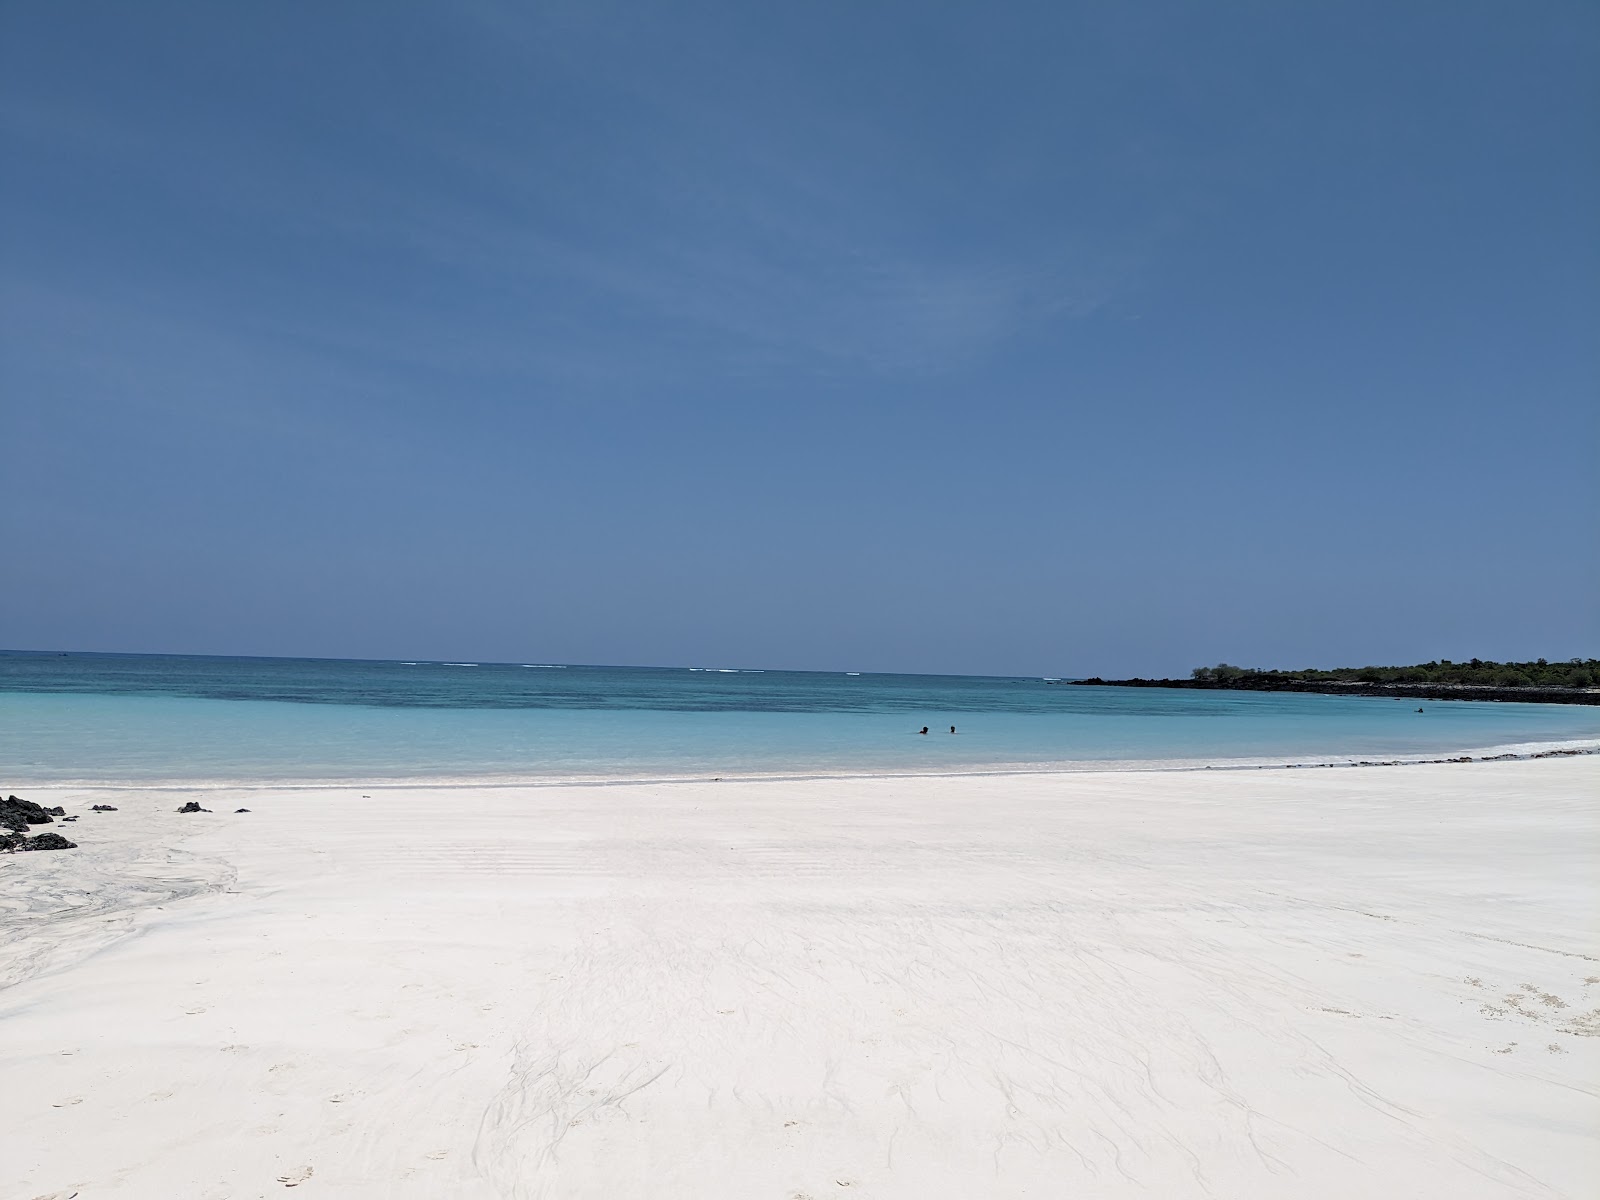 Sada Beach'in fotoğrafı çok temiz temizlik seviyesi ile